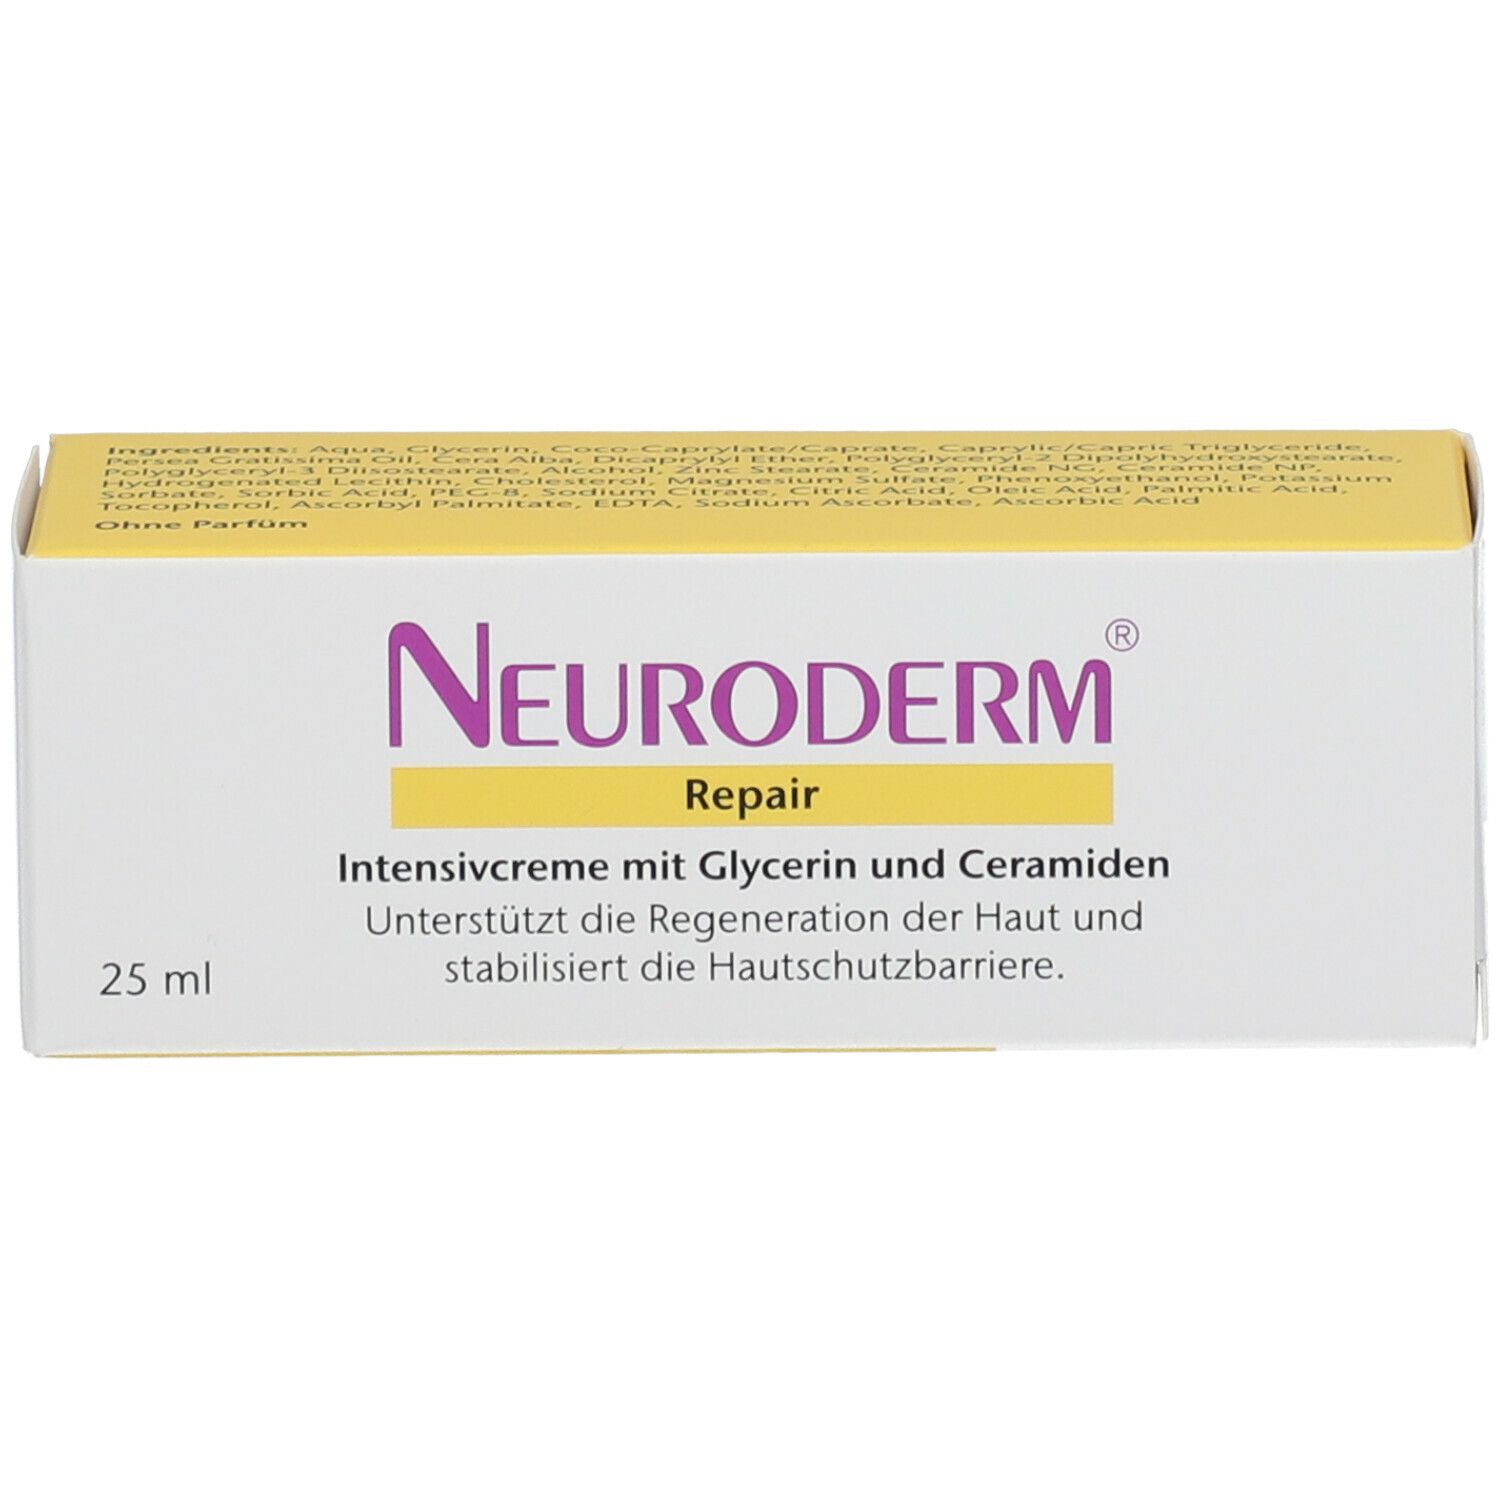 Neuroderm® Repair Creme